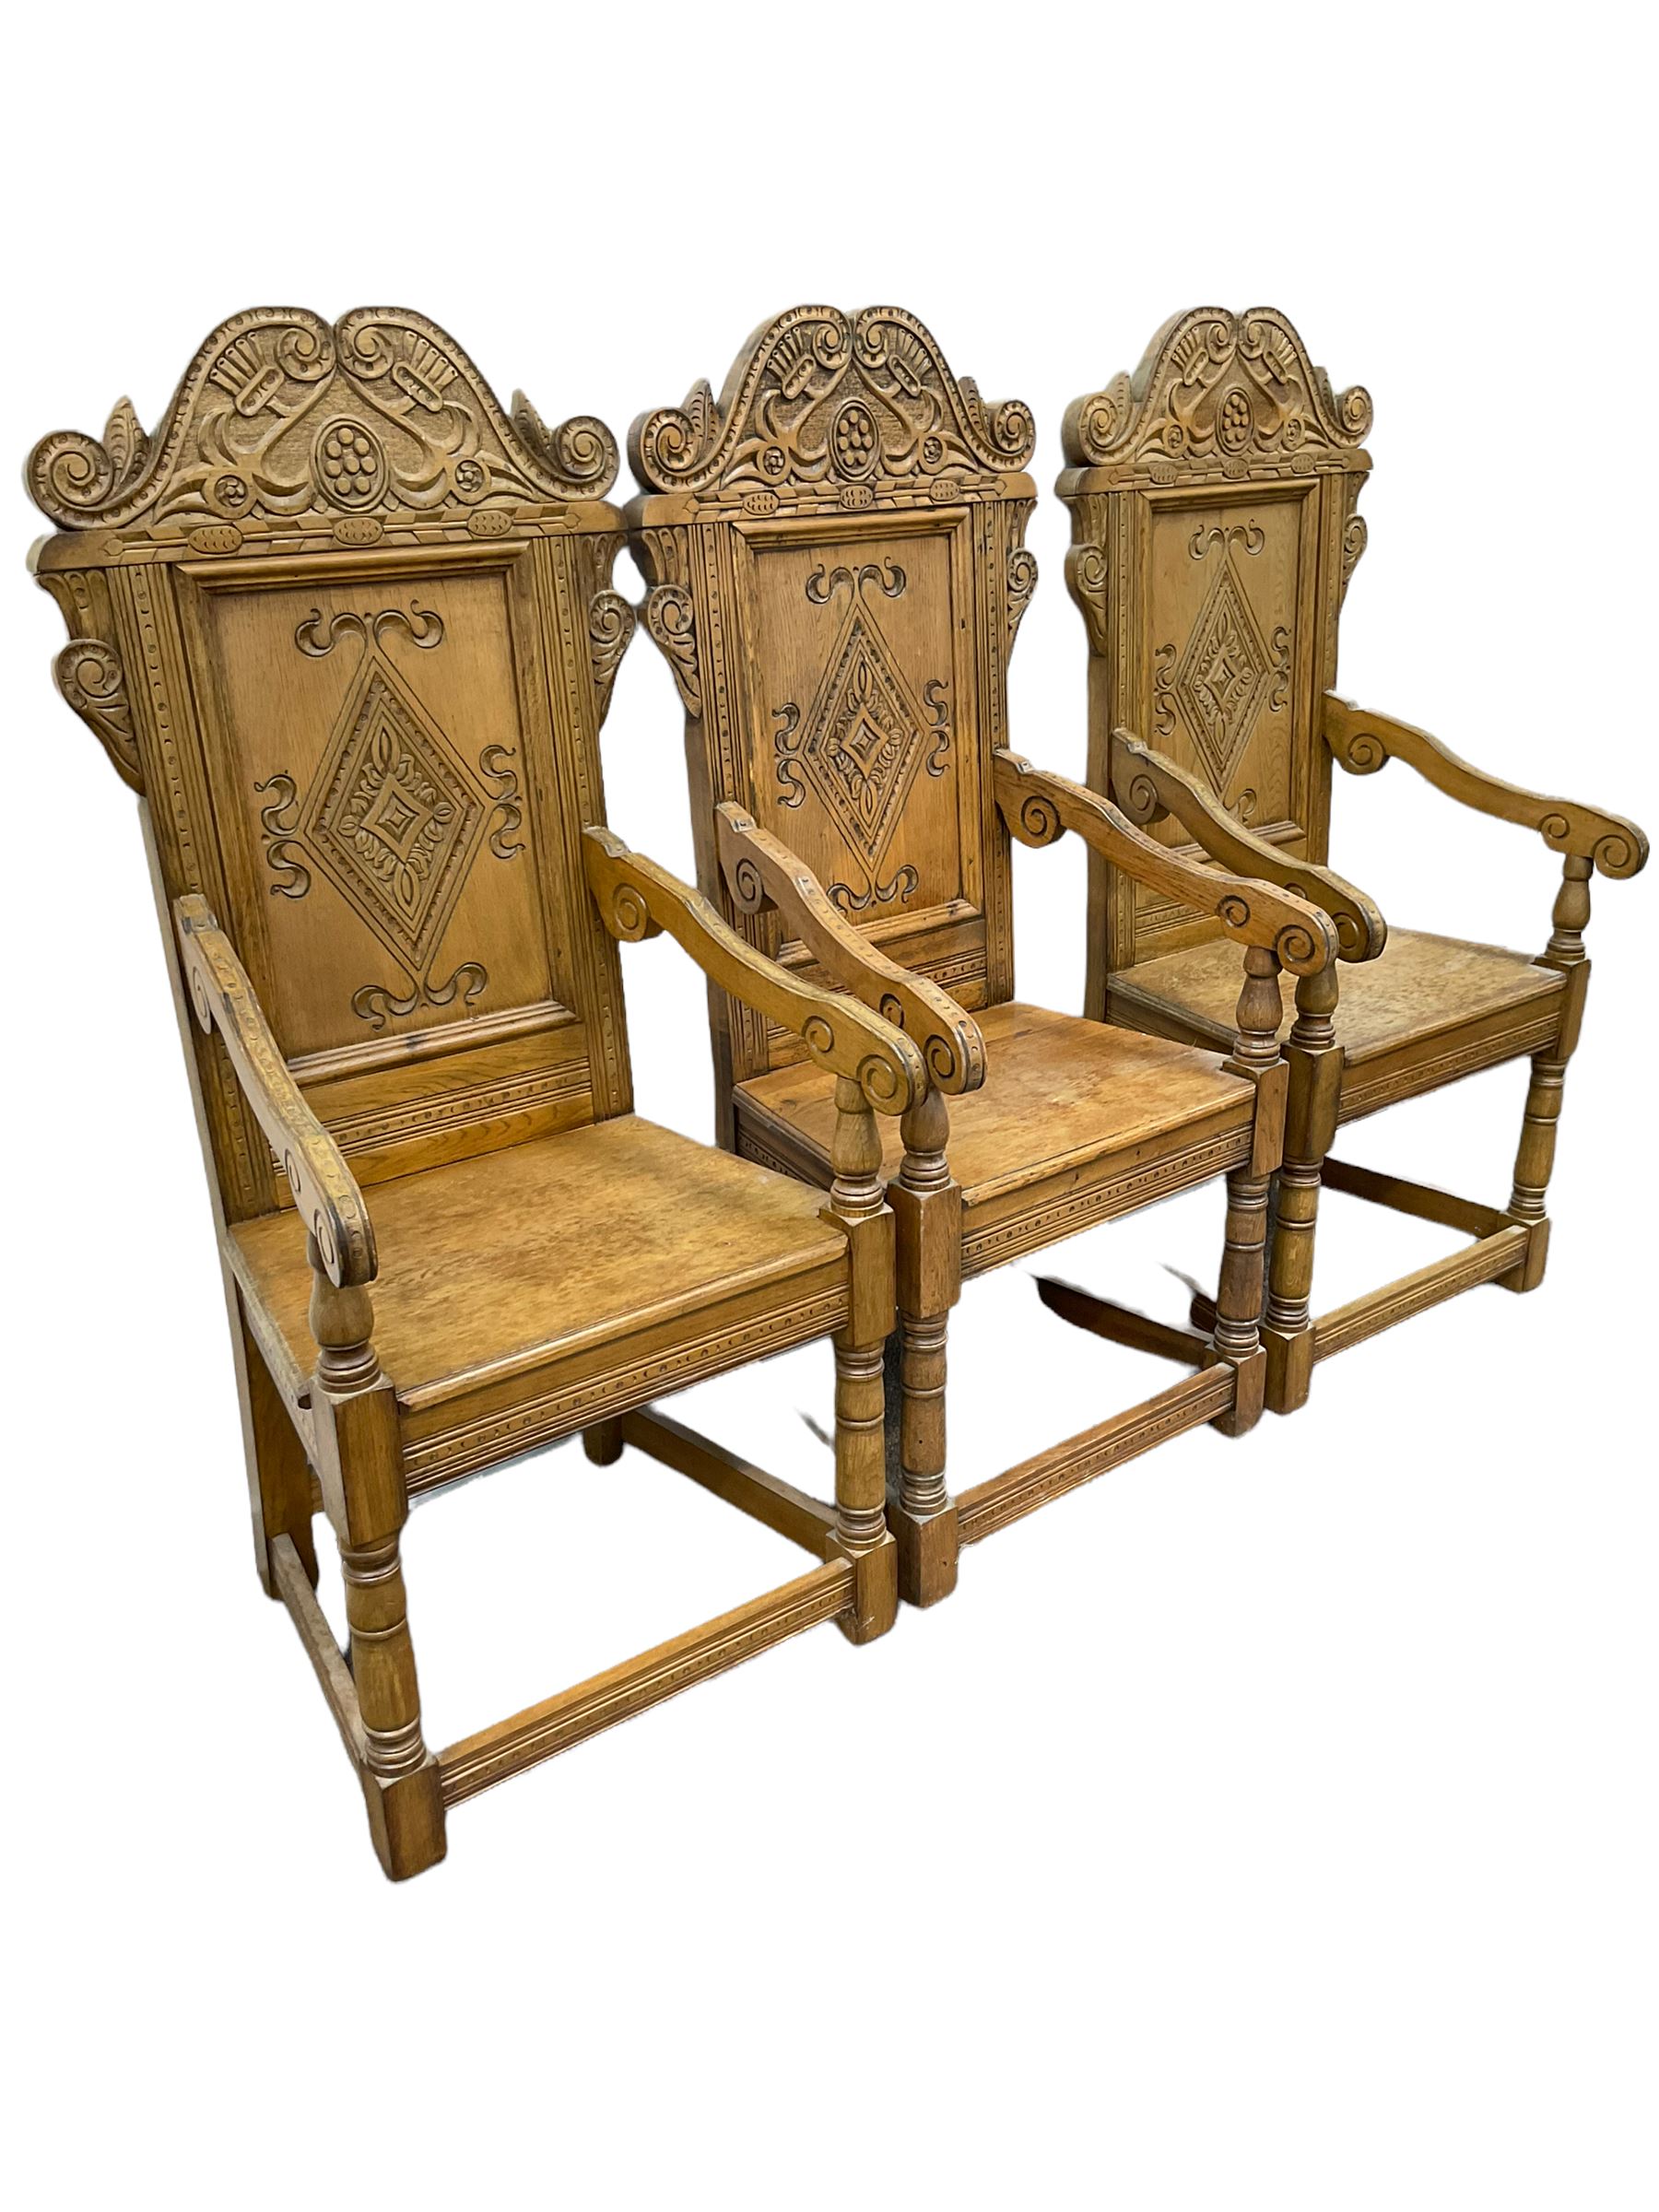 Set six 17th century style oak Wainscot chairs - Image 3 of 8